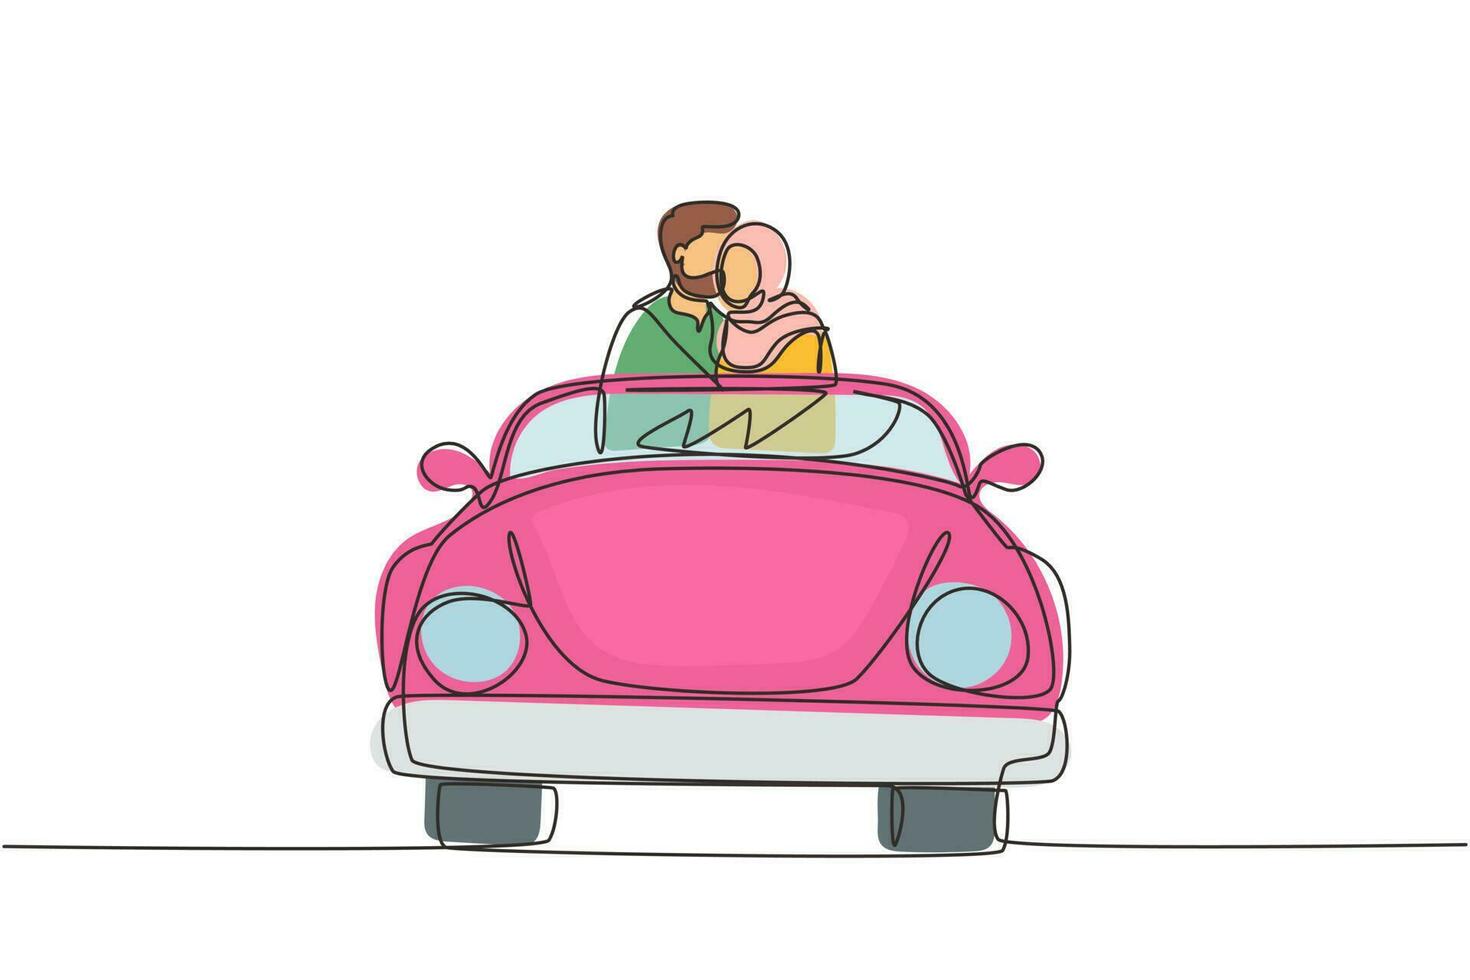 singola linea continua disegno felice coppia araba in viaggio su strada in auto d'epoca retrò. uomo e donna nel veicolo. relazione romantica di coppia sposata. illustrazione vettoriale di un disegno grafico a una linea